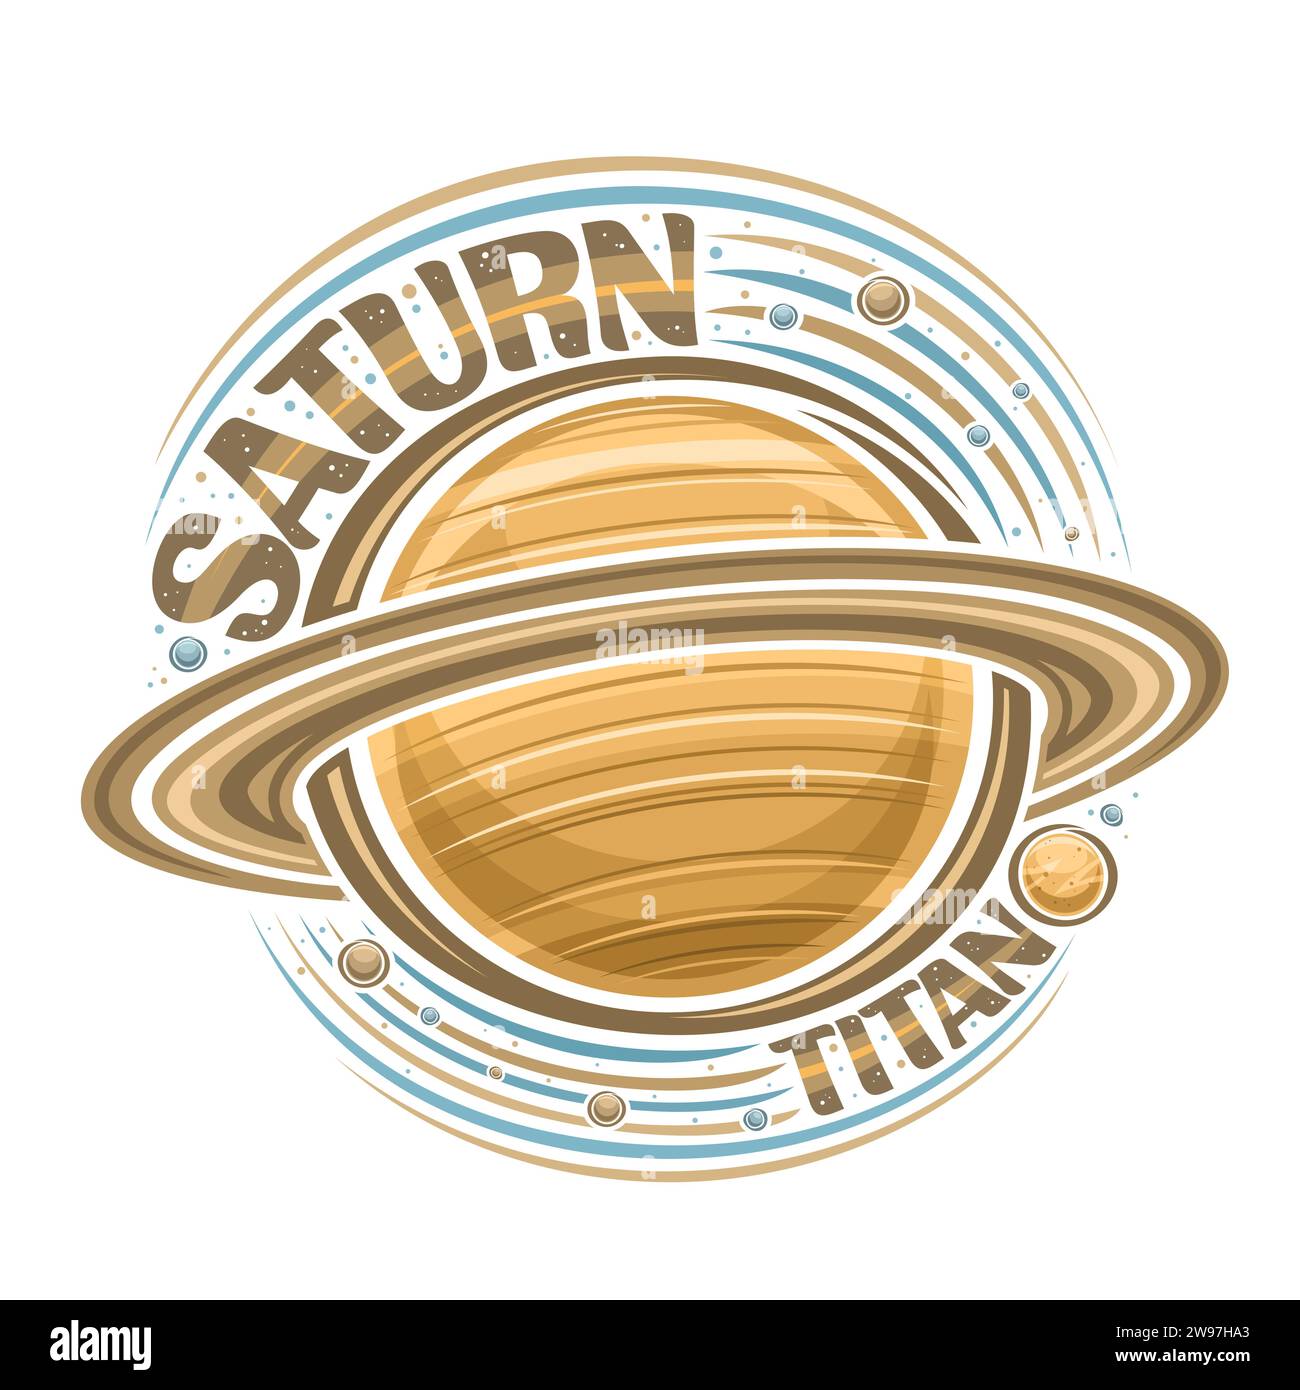 Logo vettoriale per Saturn, stampa cosmica decorativa con pianeta saturno rotante e molte lune, superficie ventosa gassosa, adesivo futuristico cosmo con le uniche Illustrazione Vettoriale